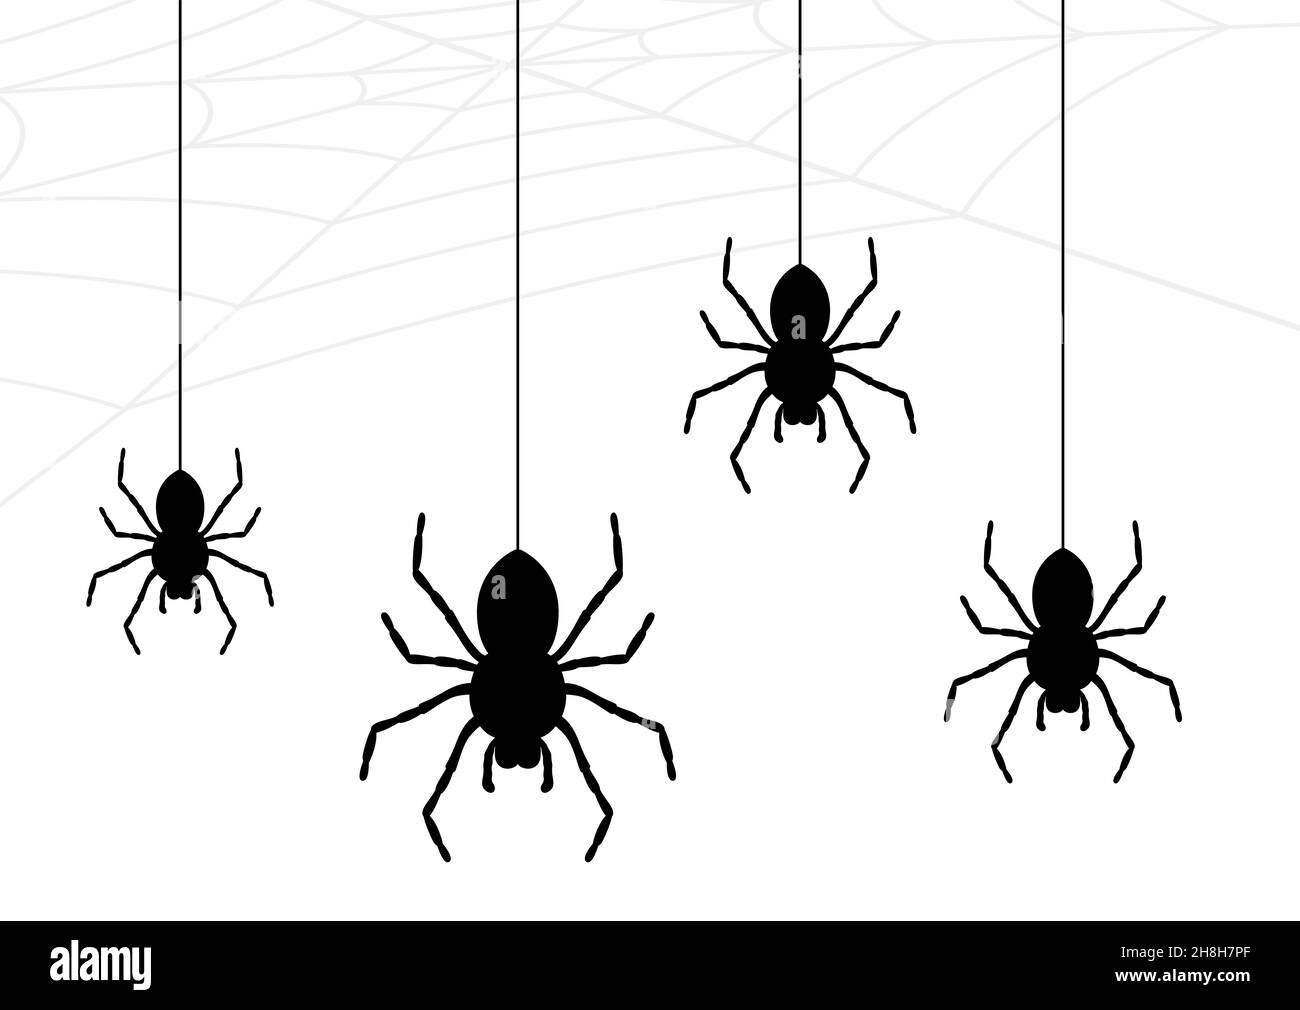 Spider Kollektion, Spinnennetz isoliert auf weißem Hintergrund. Illustration für Halloween Design. Spinnennetz-Elemente, gruselige, gruselige, schreckliche Halloween-Deko Stock Vektor